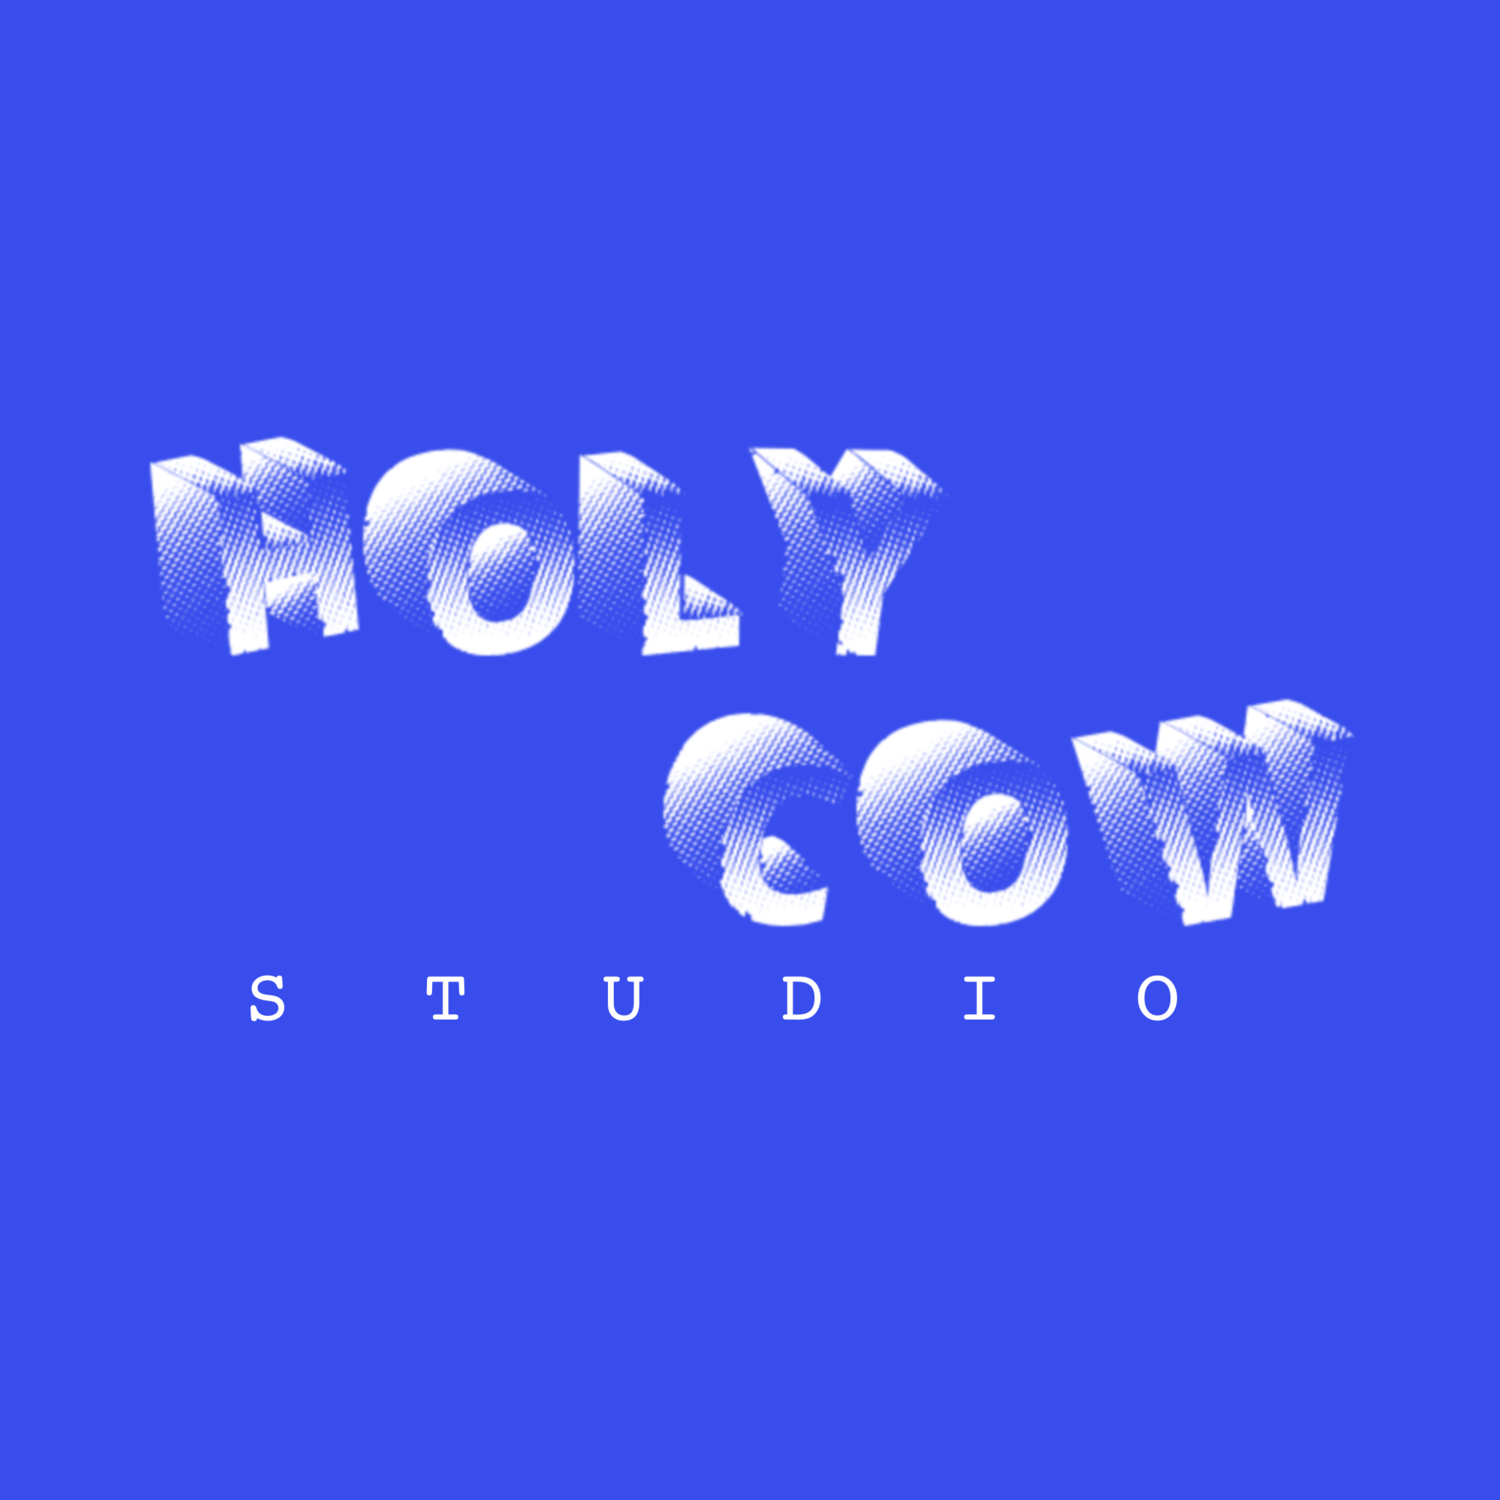 Holy Cow Studio